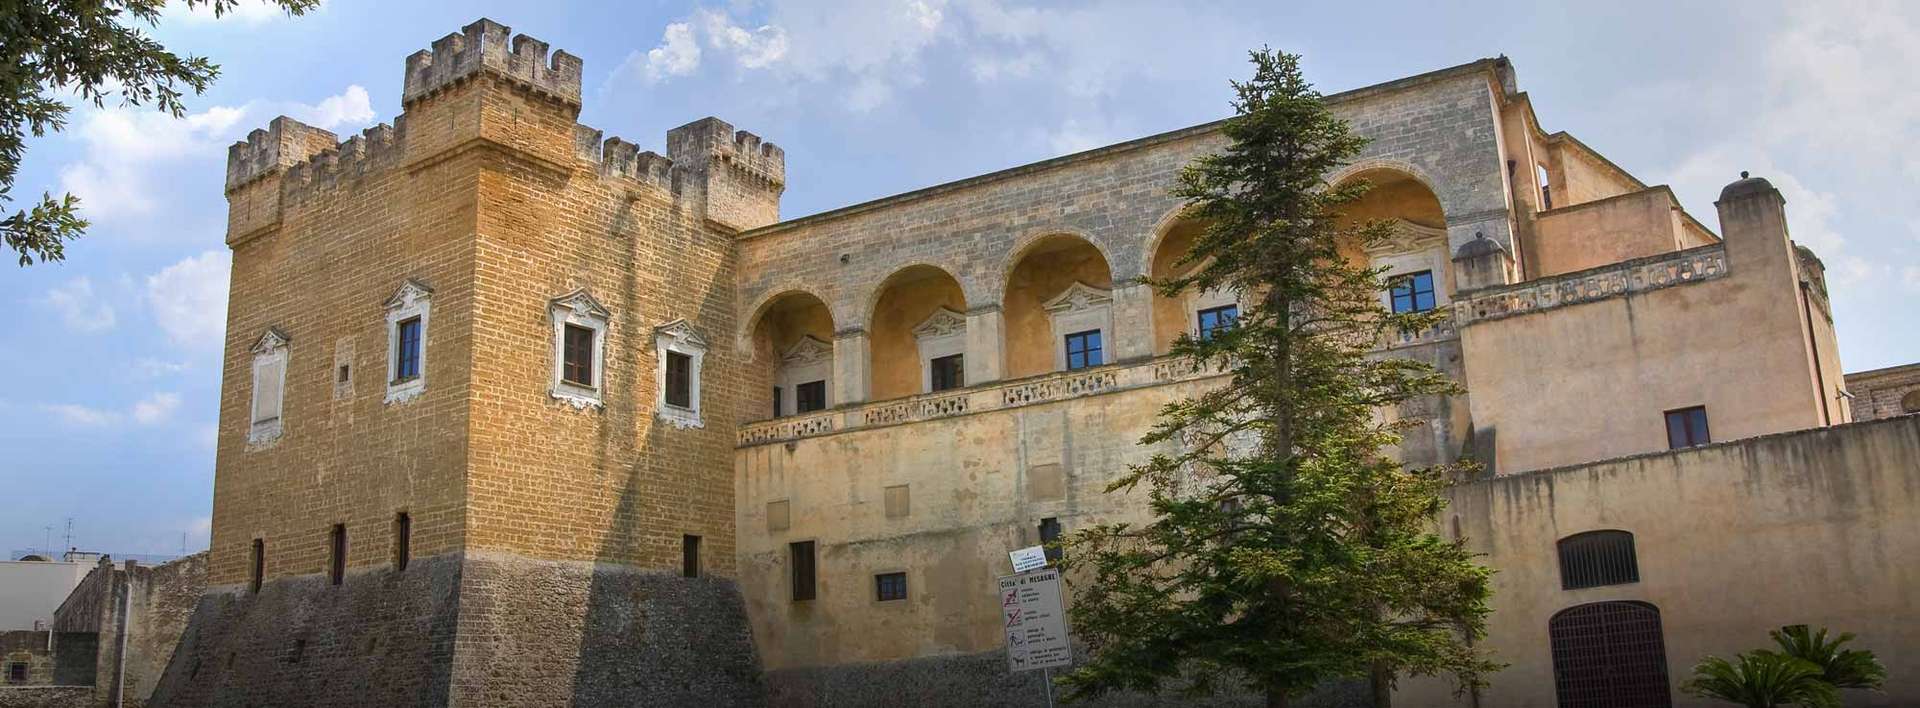 Mesagne Castello